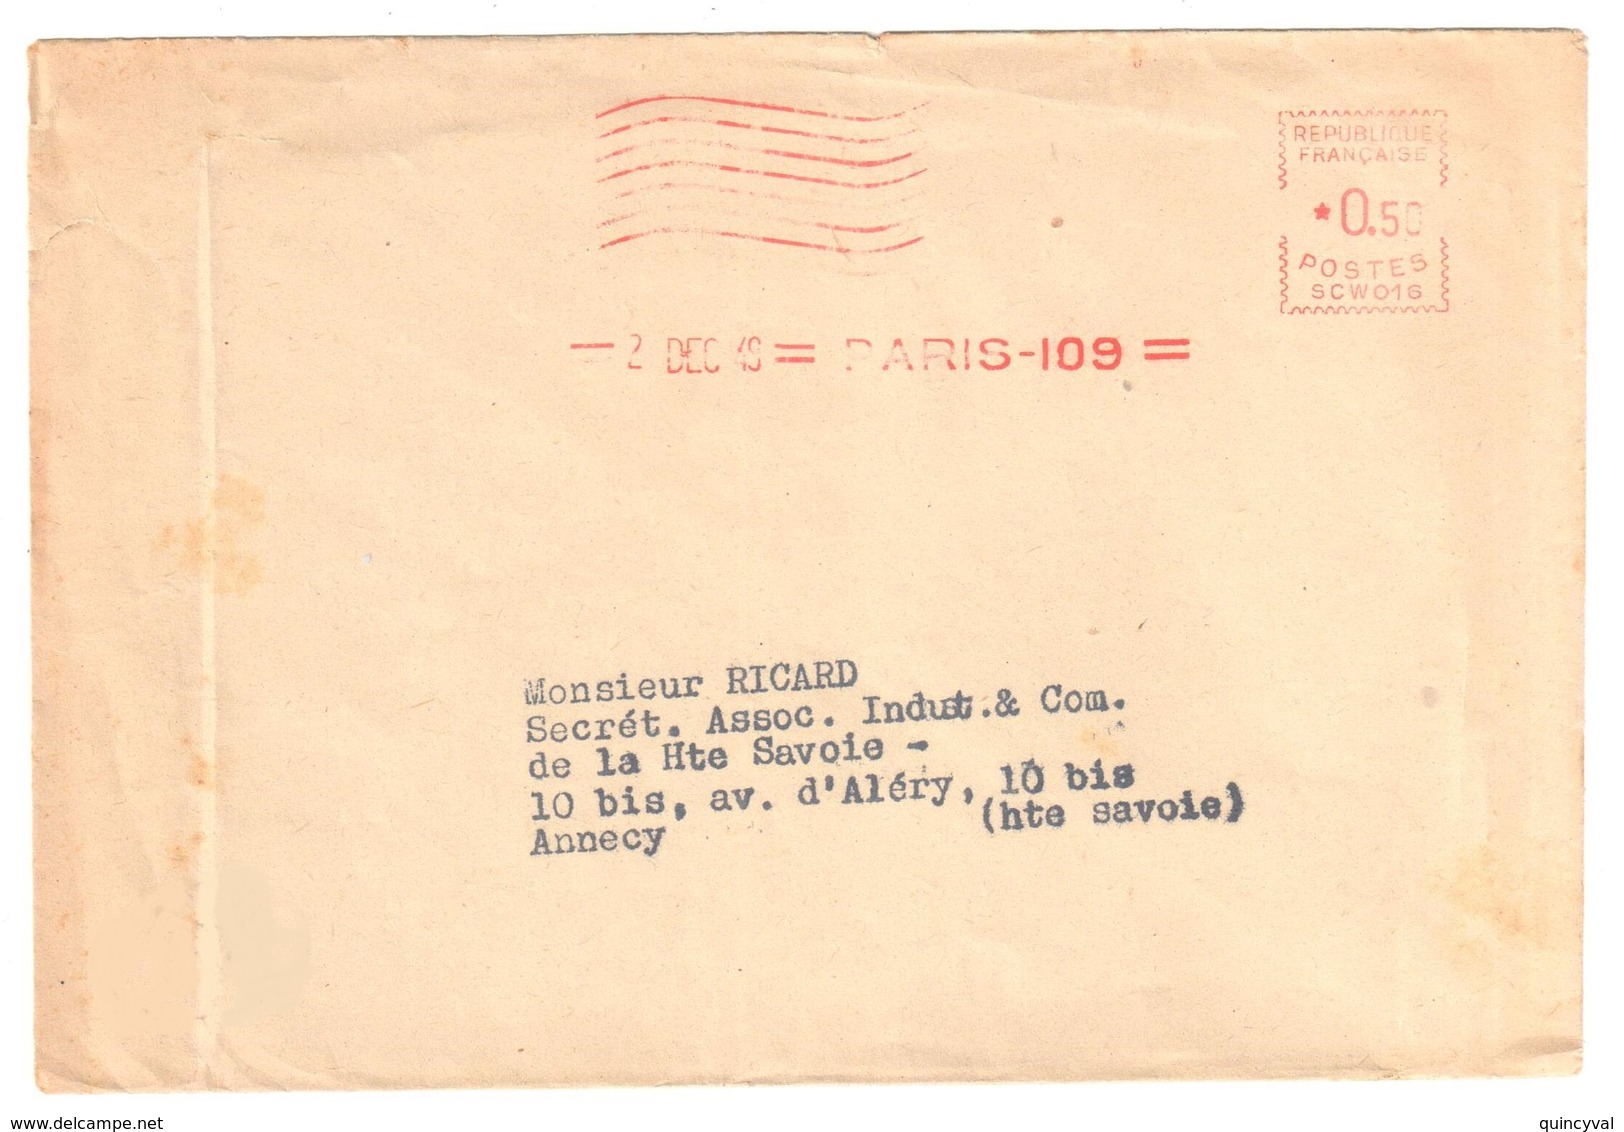 PARIS 109 Enveloppe Journal Sous Enveloppe 50c Ob 2 12 1949  EMA SCW016 - EMA (Print Machine)